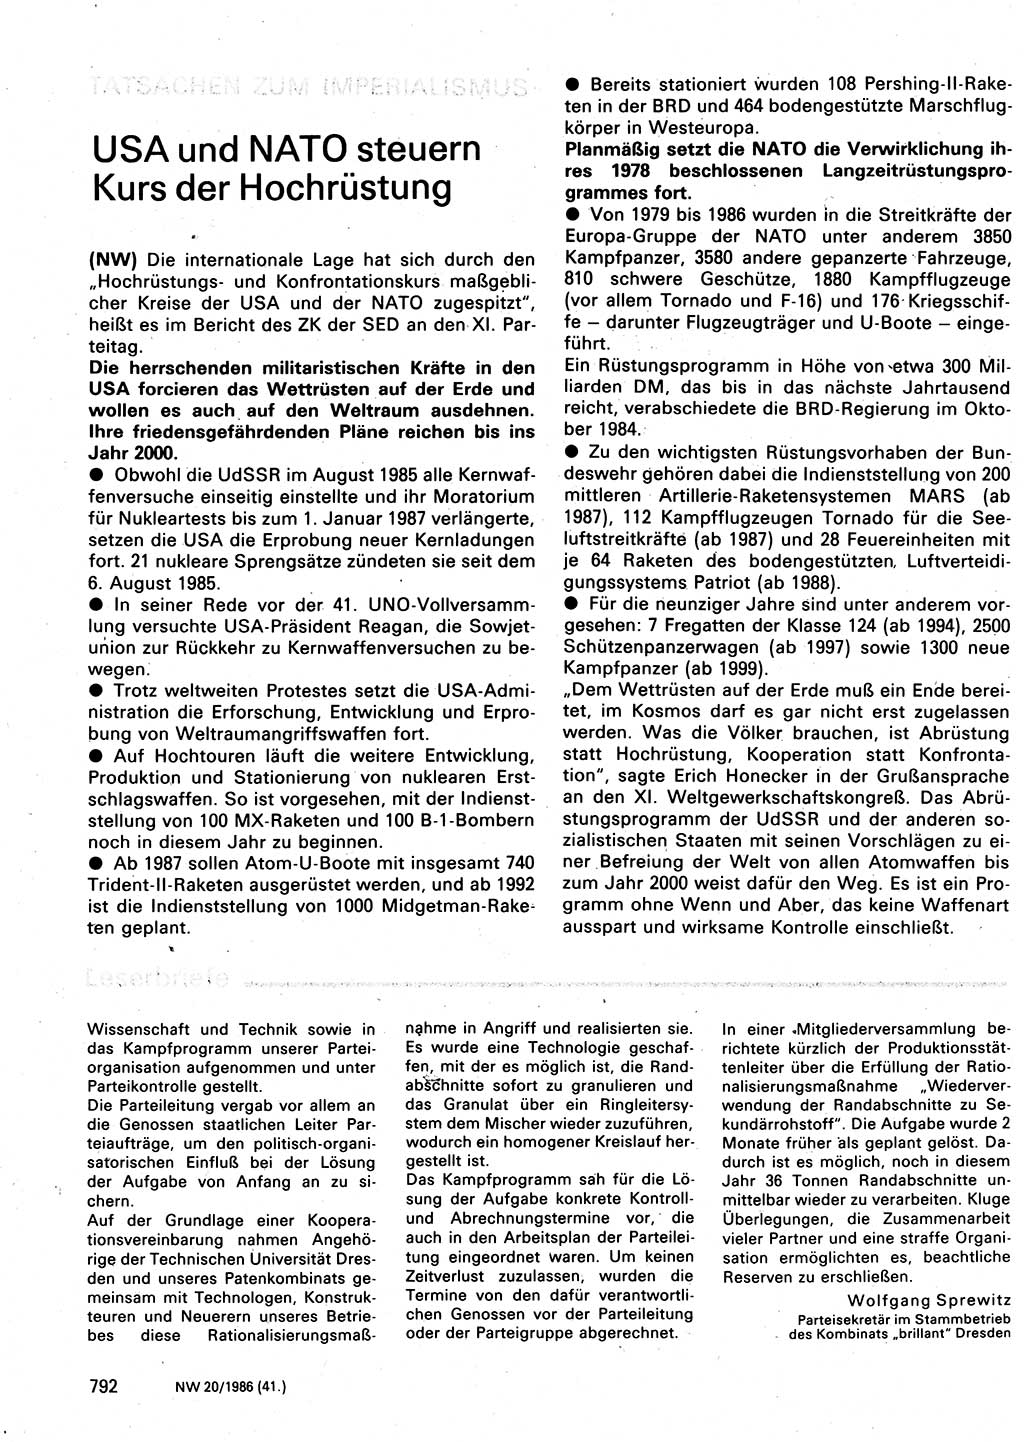 Neuer Weg (NW), Organ des Zentralkomitees (ZK) der SED (Sozialistische Einheitspartei Deutschlands) für Fragen des Parteilebens, 41. Jahrgang [Deutsche Demokratische Republik (DDR)] 1986, Seite 792 (NW ZK SED DDR 1986, S. 792)